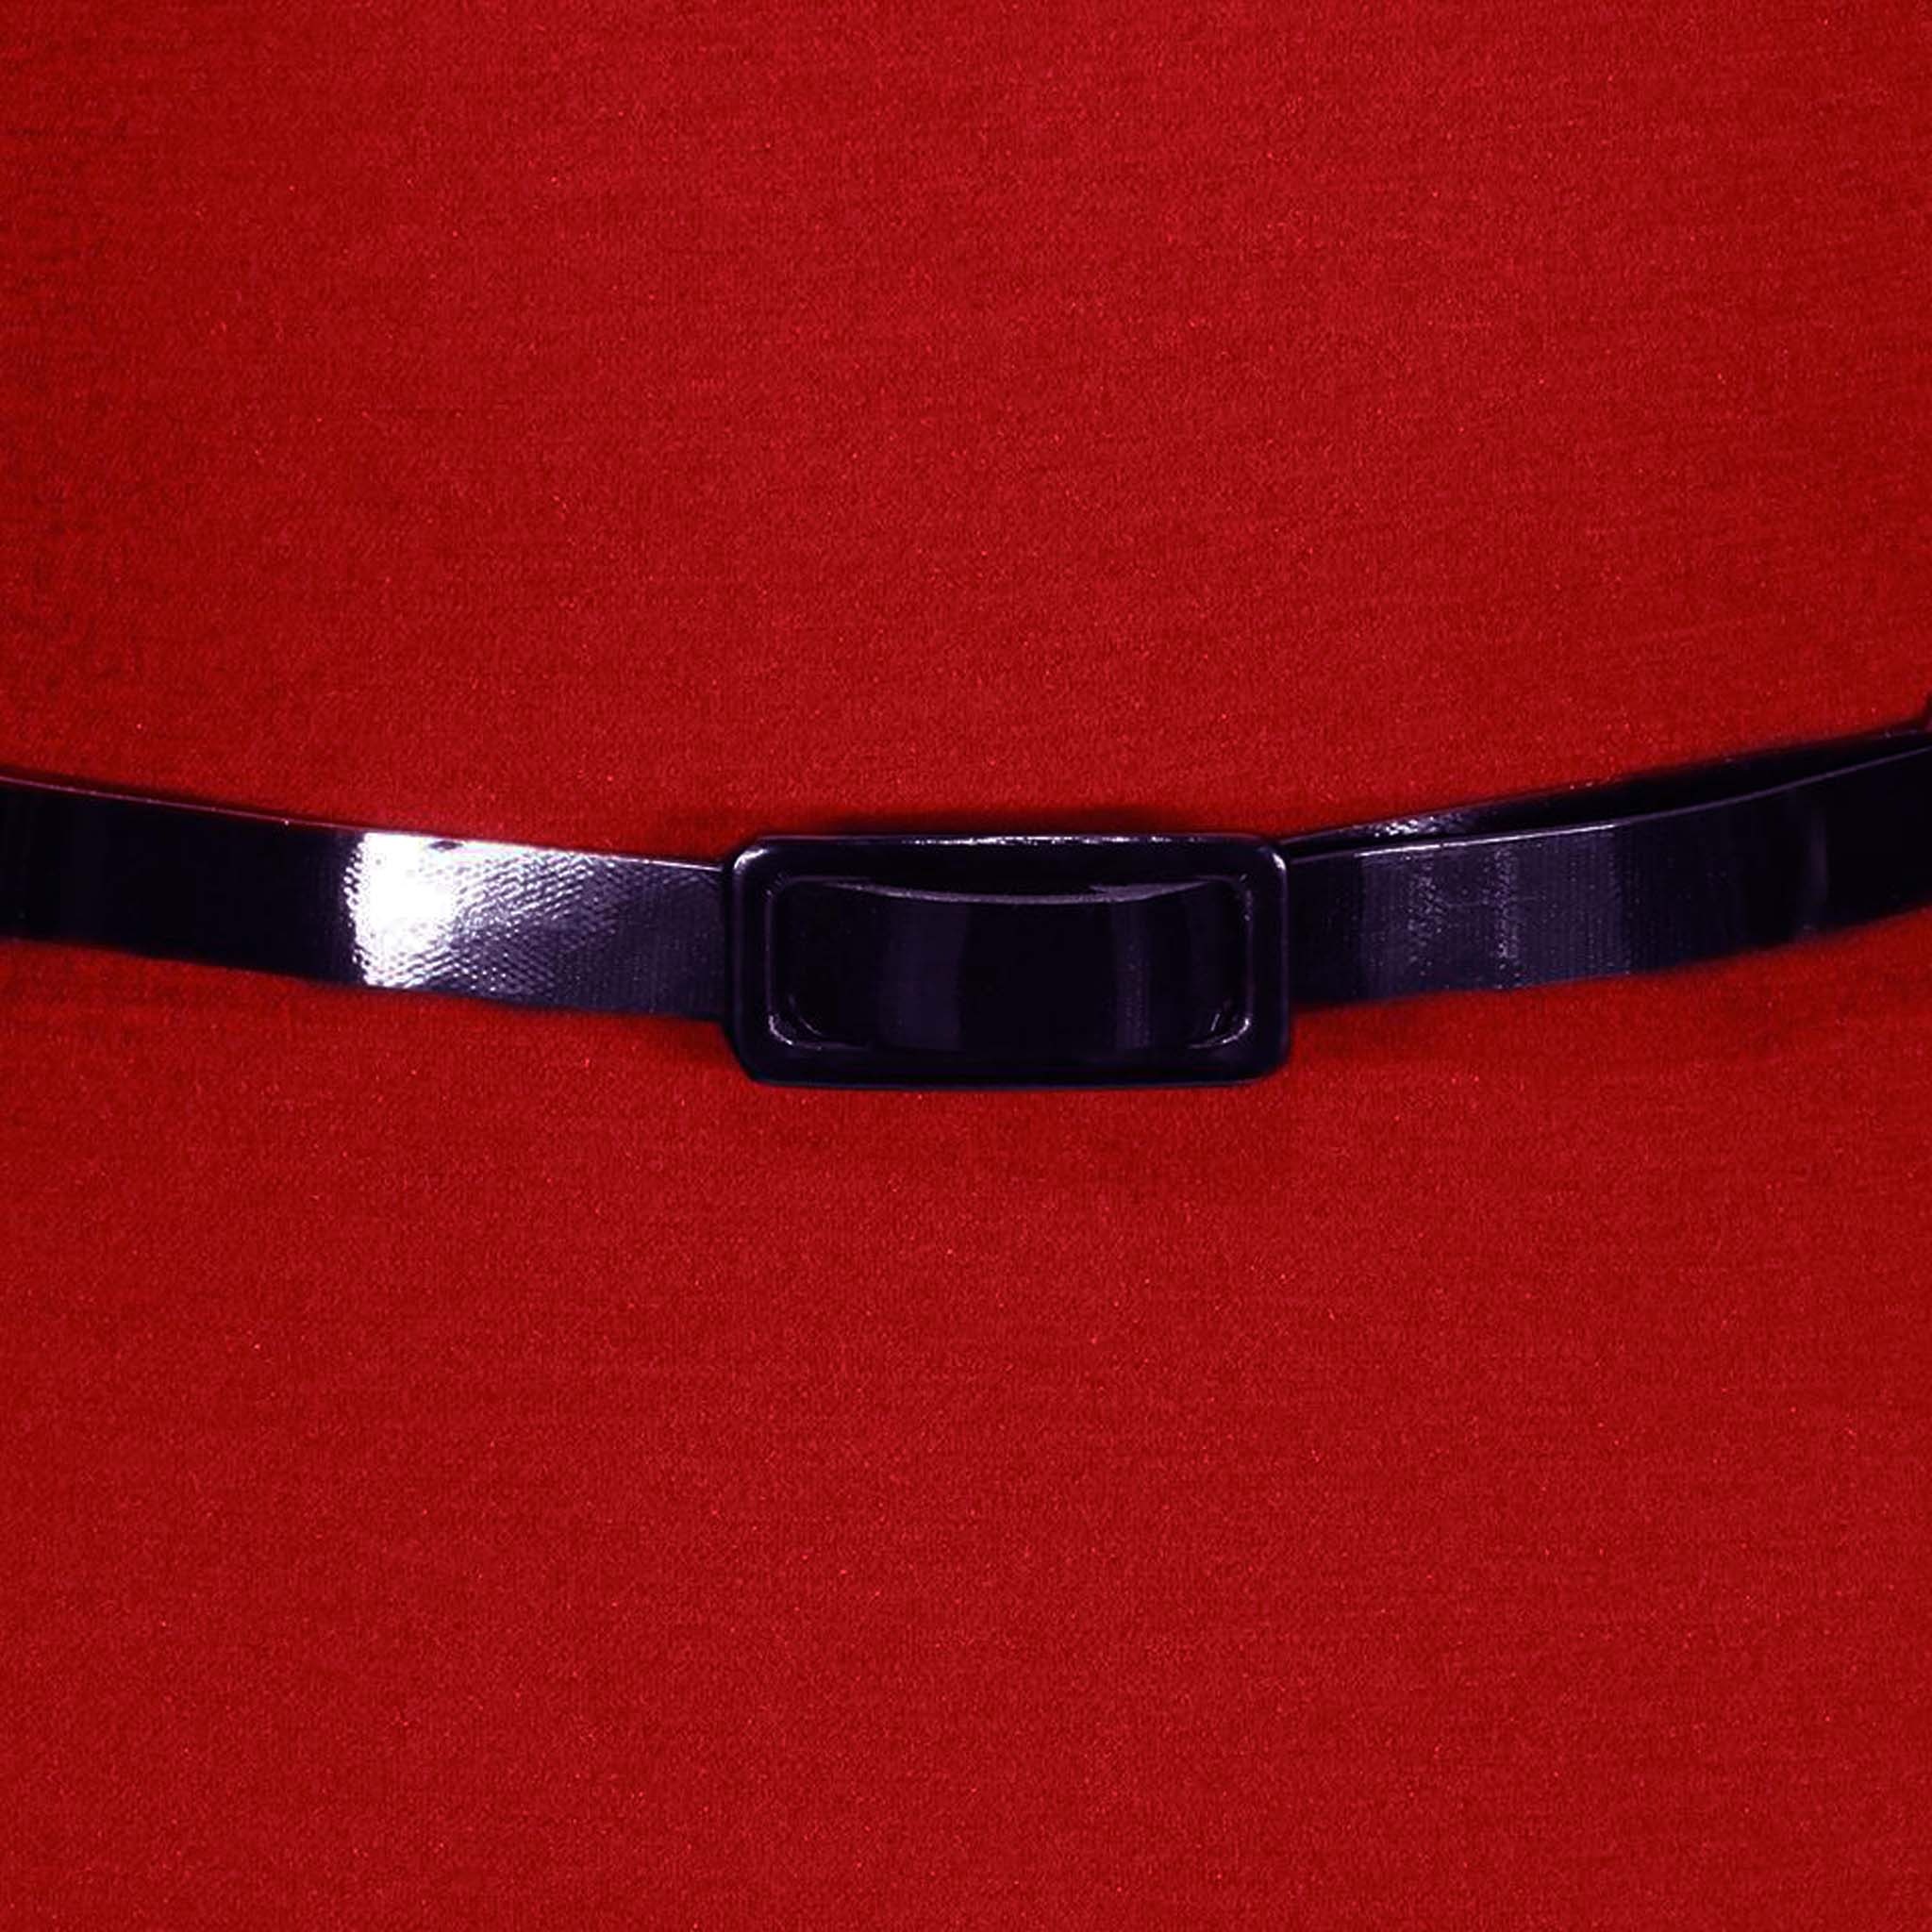 Red Wide V Neck 3/4 Sleeve Vintage Style Belted Pencil Dress